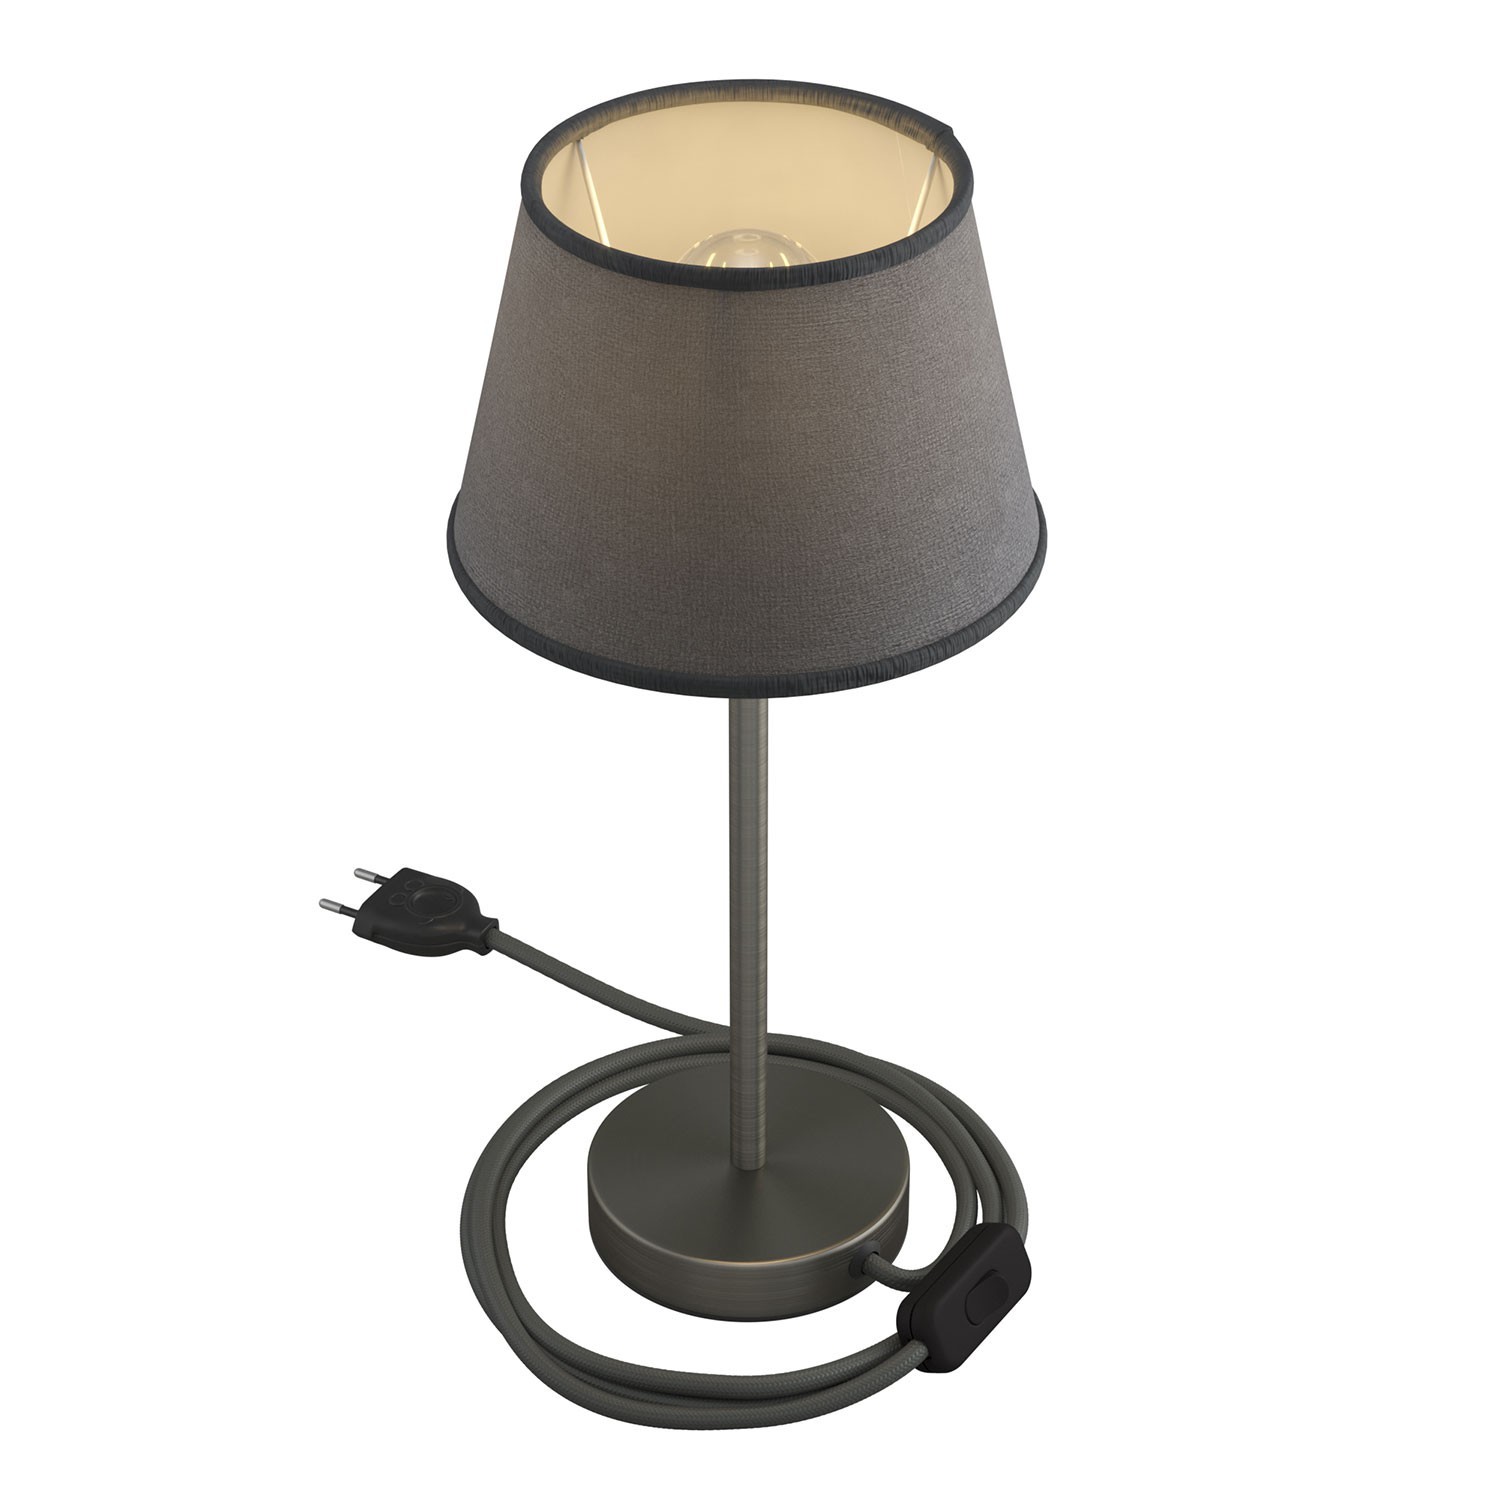 Alzaluce med Impero lampeskærm, bordlampe i metal med stik, kabel og afbryder